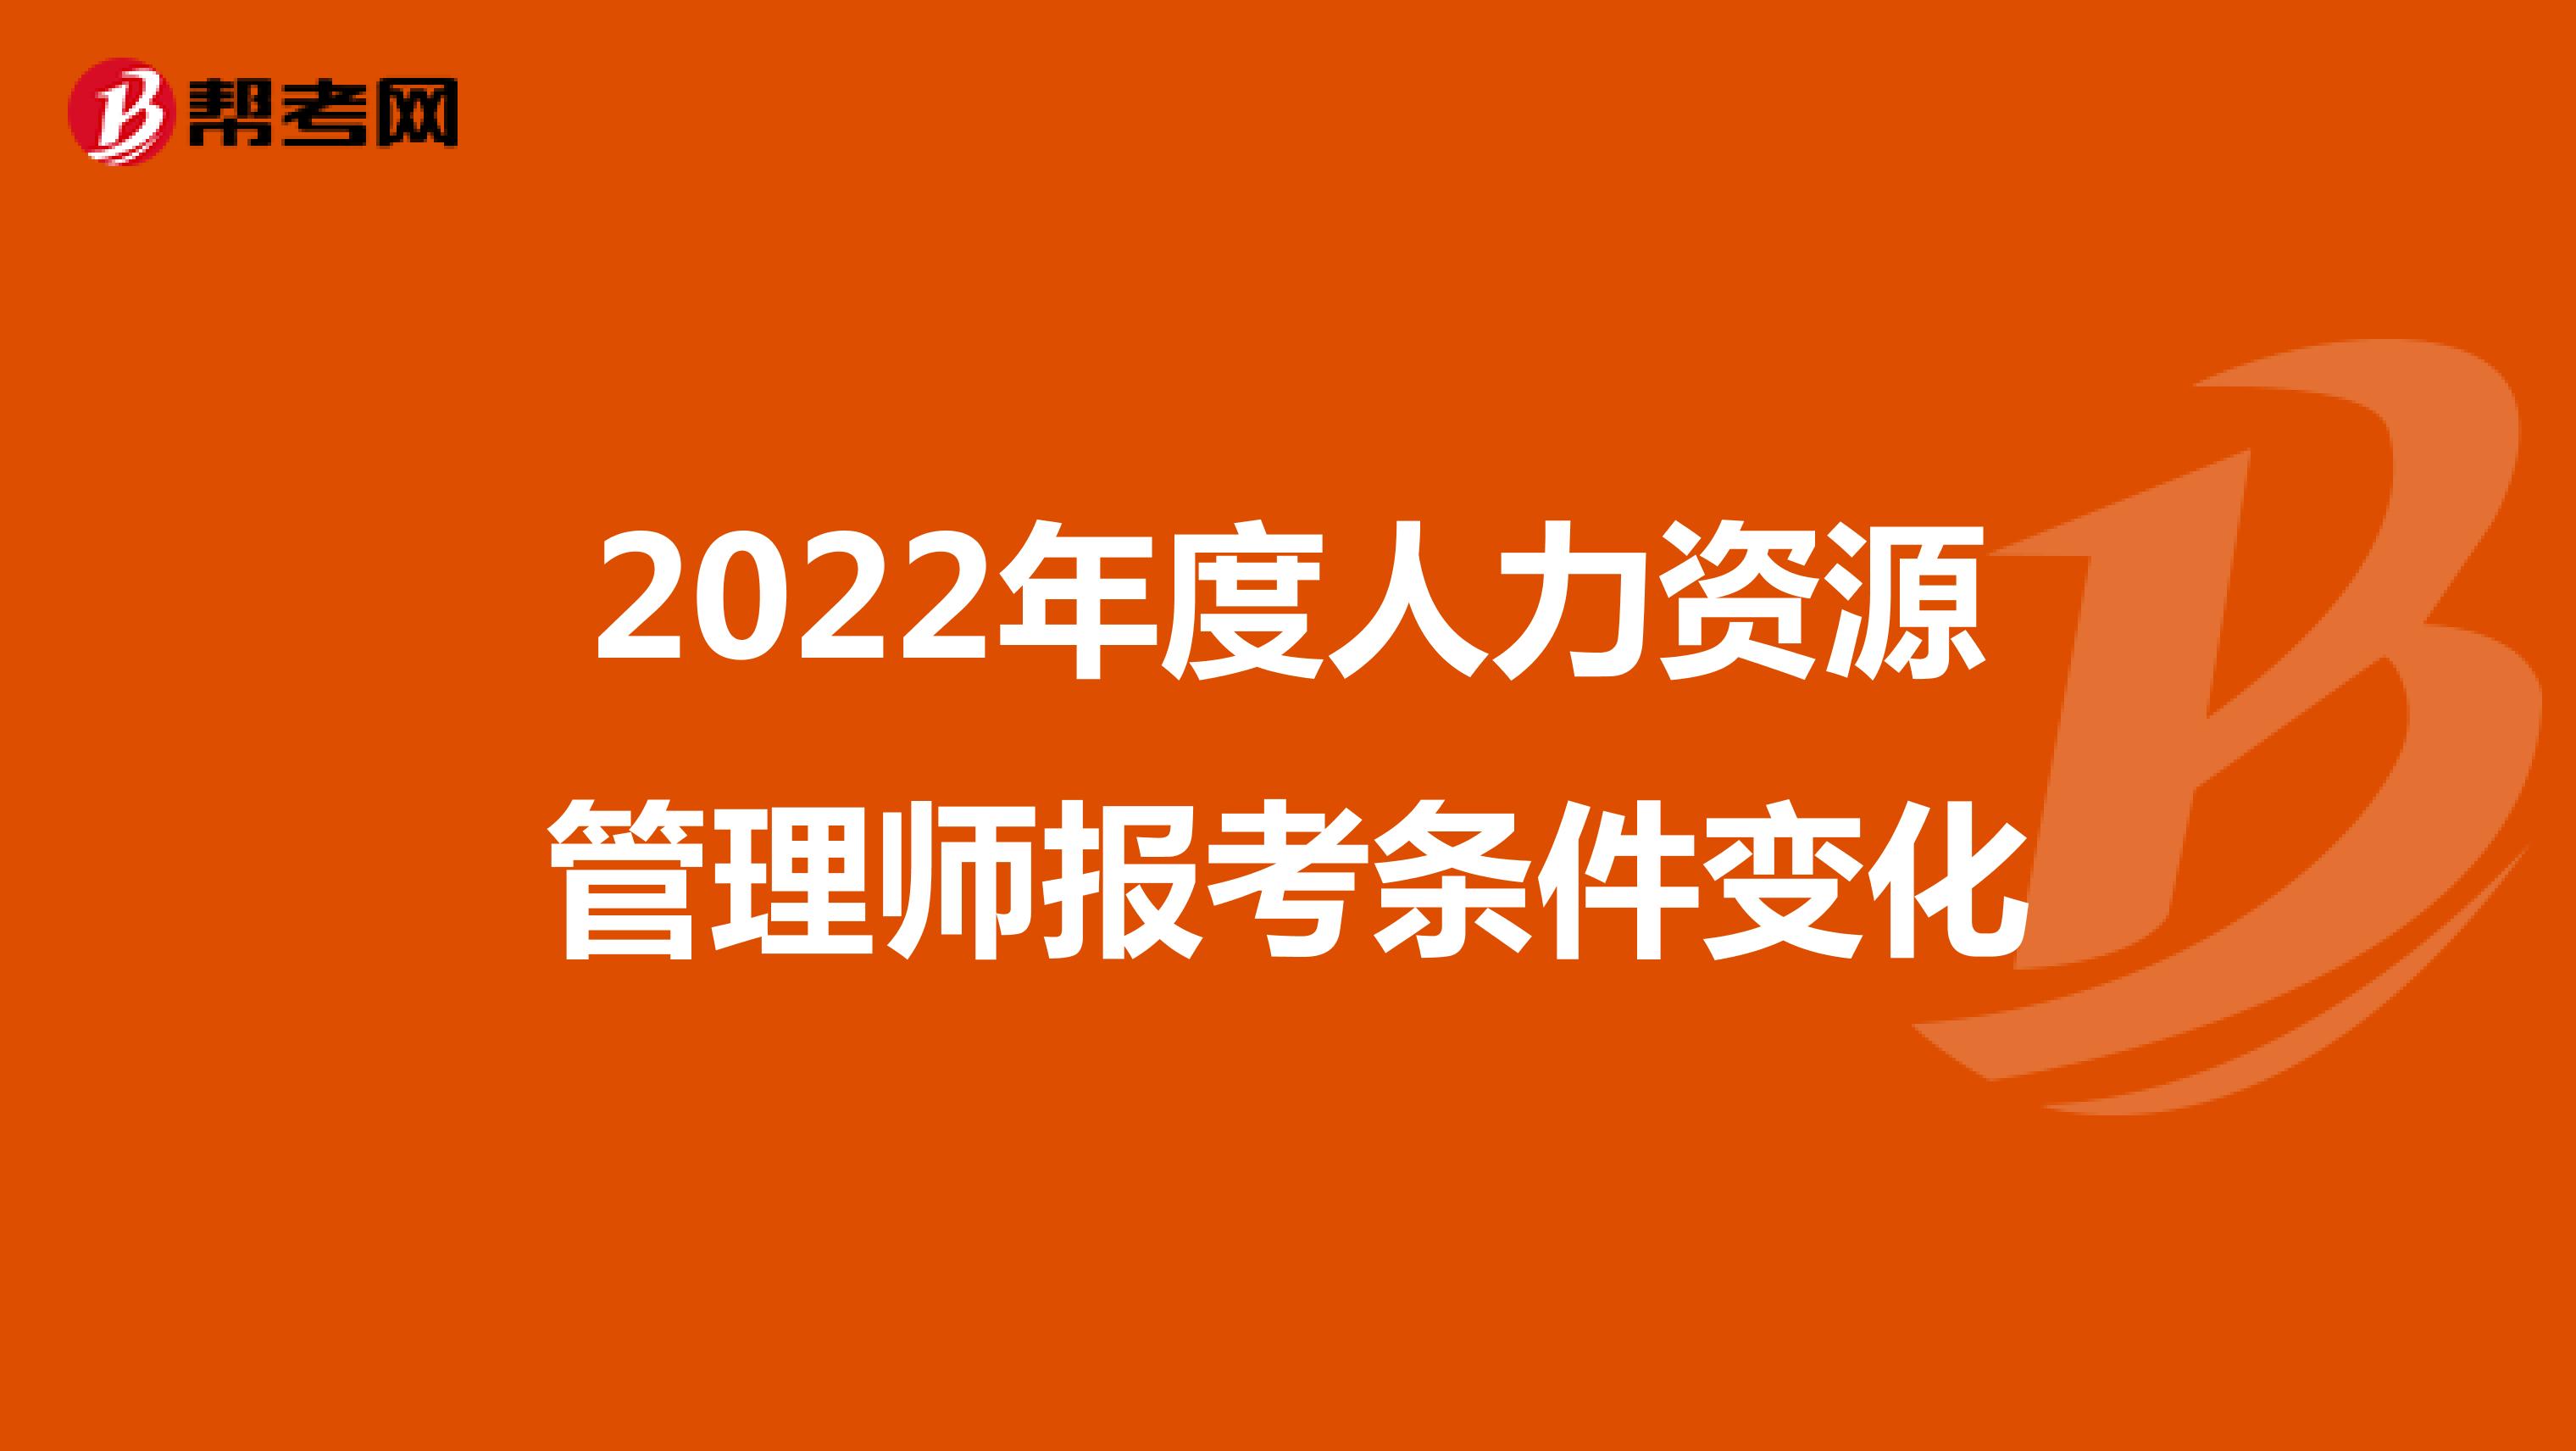 2022年度人力资源管理师报考条件变化